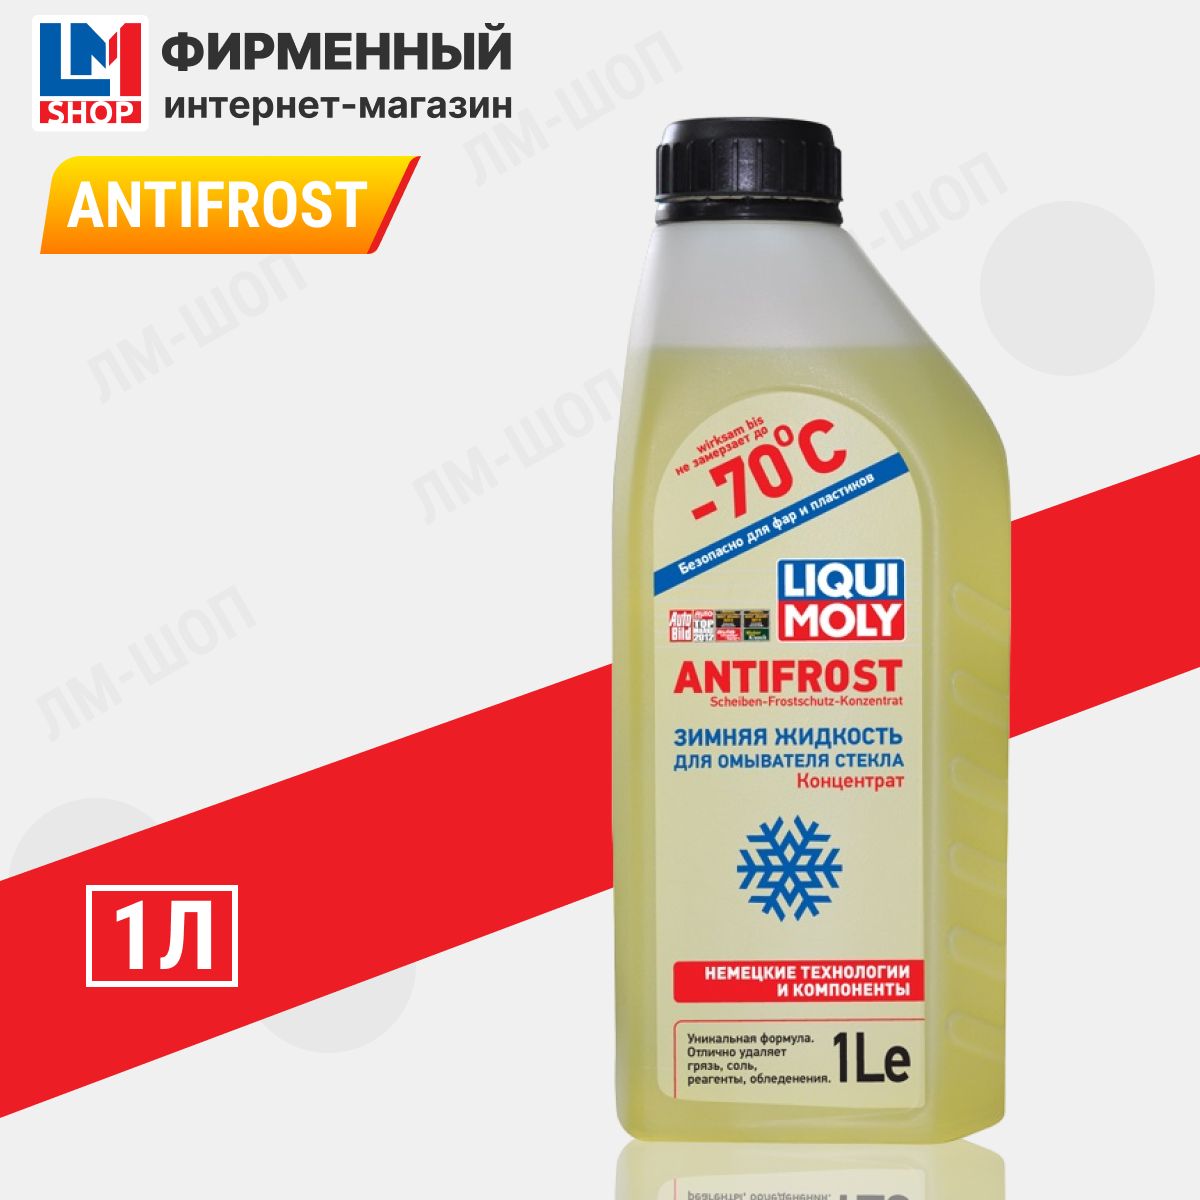 Liqui Moly Antifrost – купить жидкости омывателя на OZON по выгодным ценам